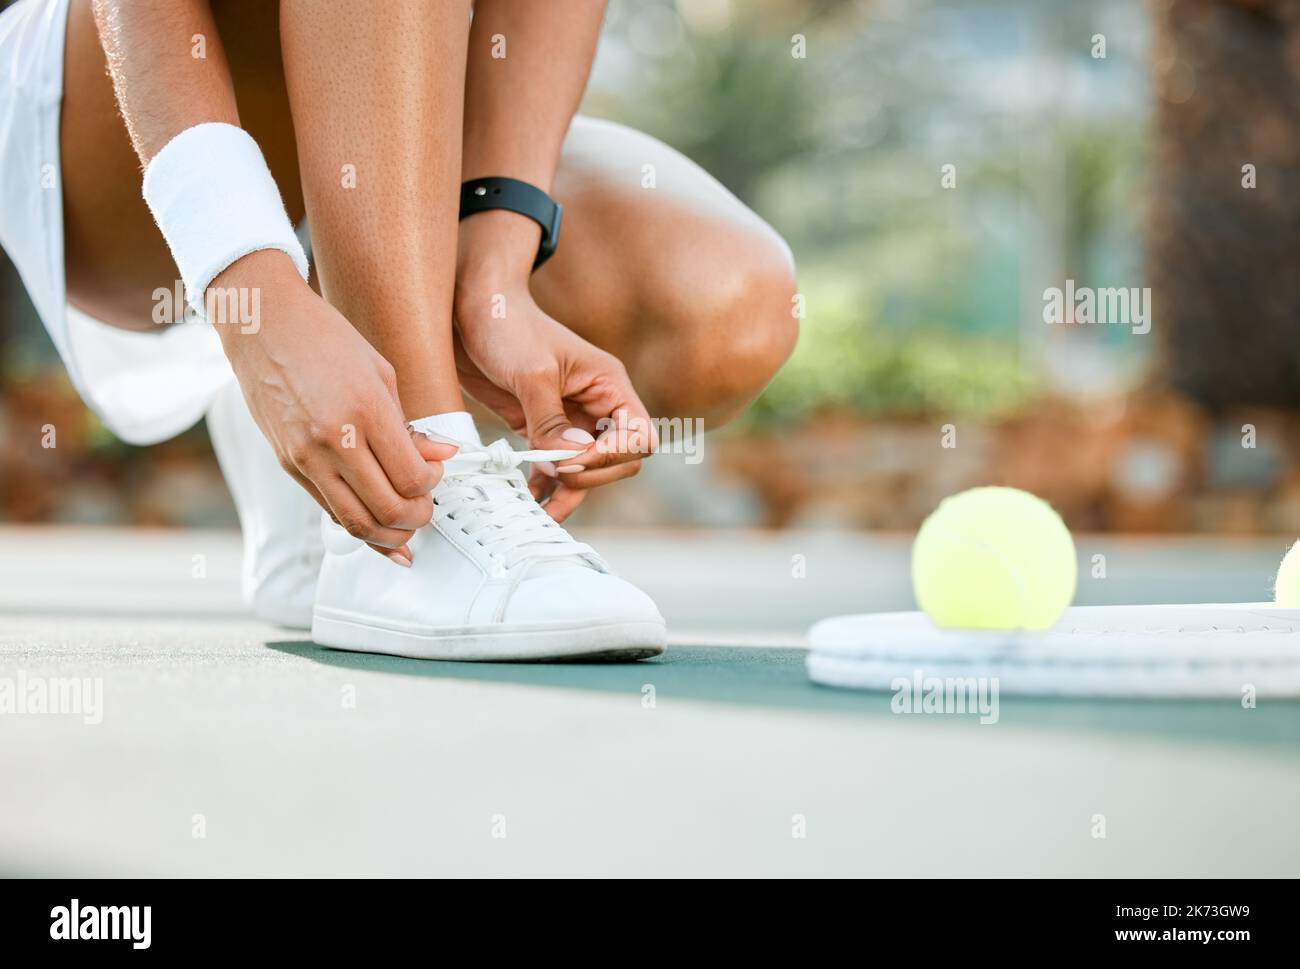 No tropezar en este campo. una joven y deportiva atándose los cordones  mientras juega al tenis en una pista Fotografía de stock - Alamy